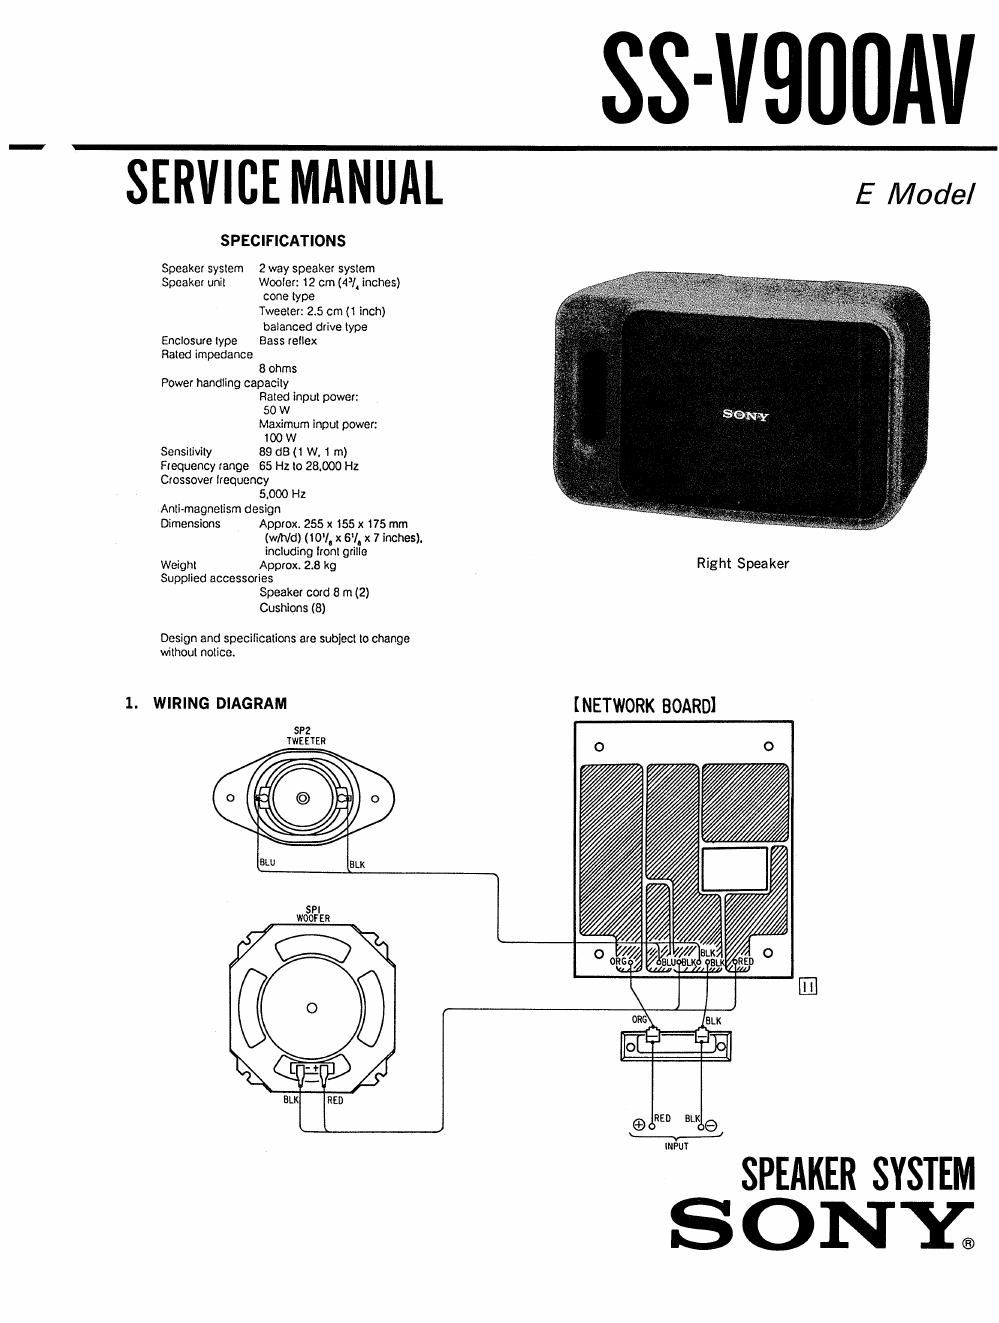 sony ss v 900 av service manual